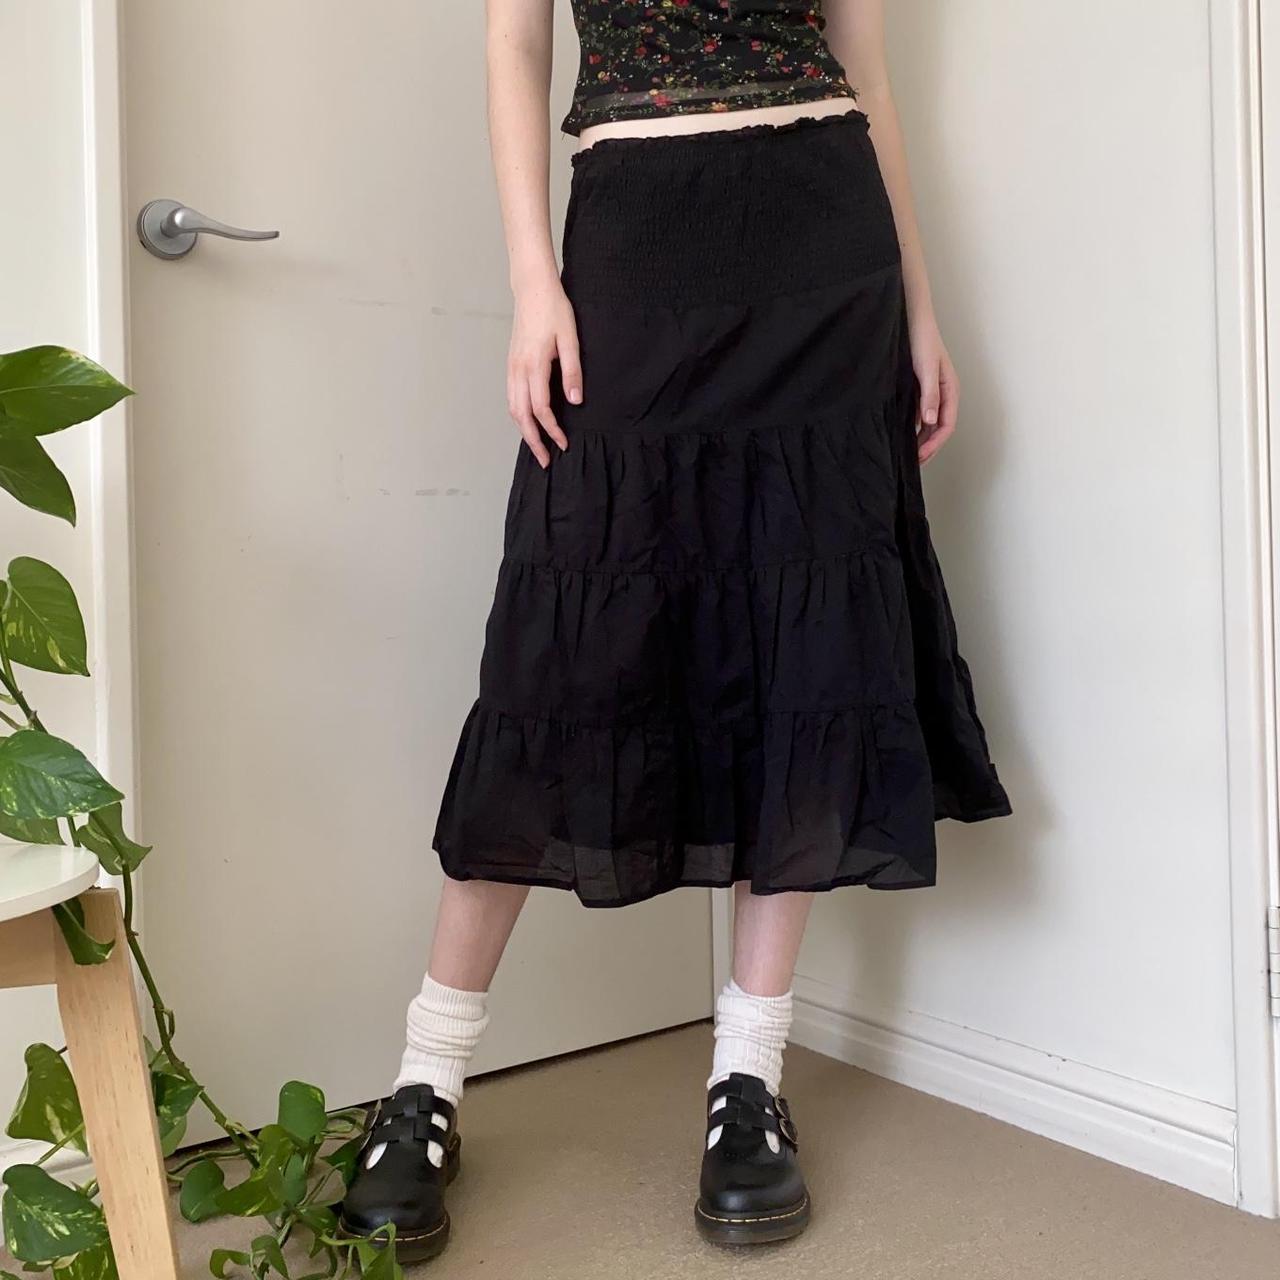 Vintage y2k / 00s black tiered midi skirt by Jay... - Depop